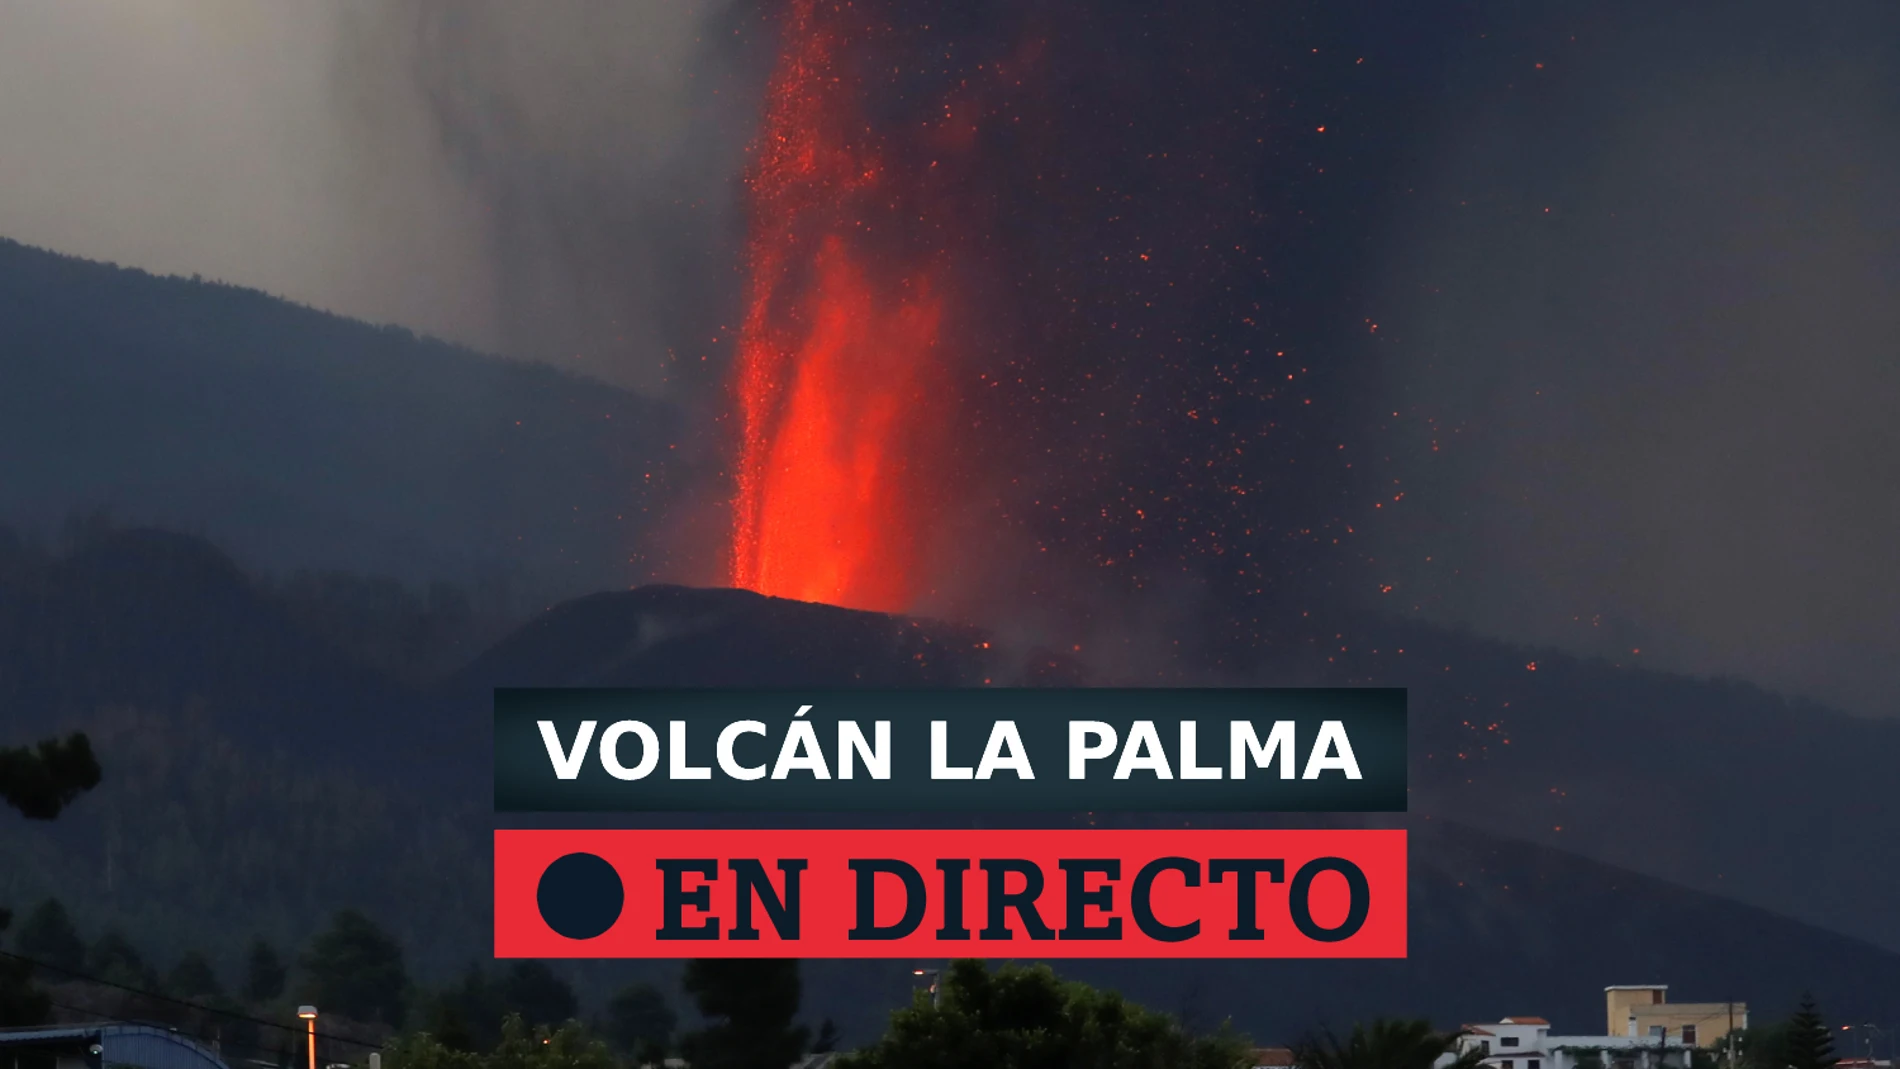 Seguimiento de la erupción del volcán de La Palma y avance de la lava al mar, directo